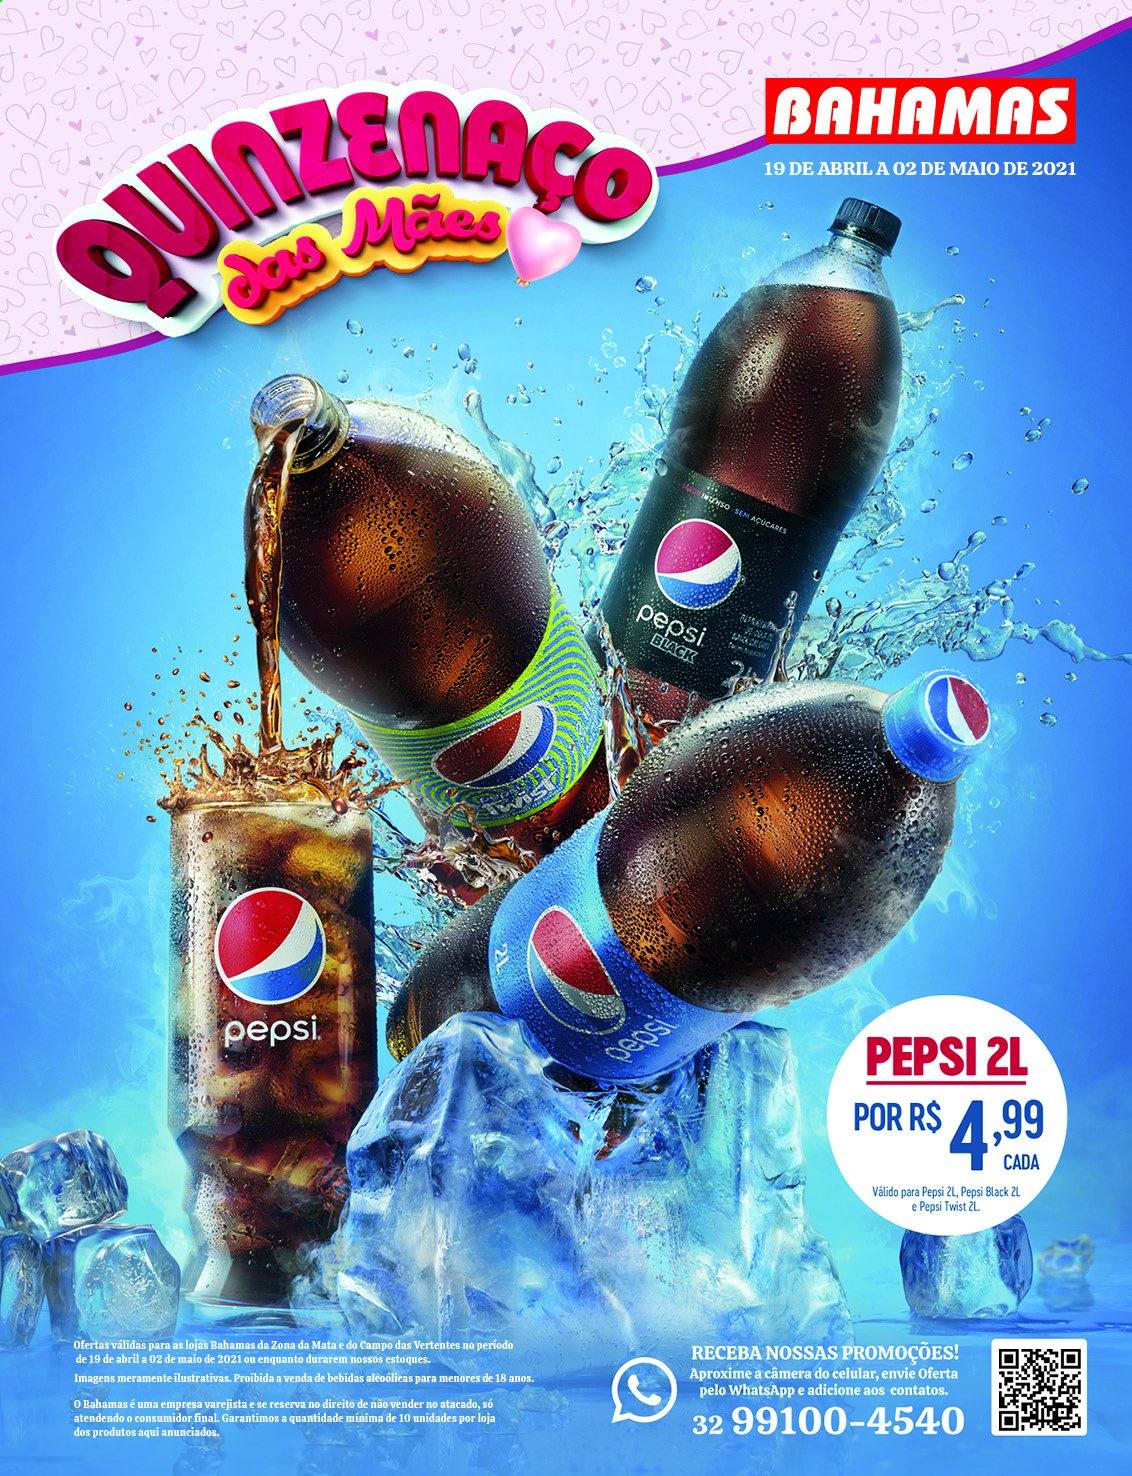 thumbnail - Folheto Bahamas Supermercados - 19/04/2021 - 02/05/2021 - Produtos em promoção - Pepsi. Página 1.